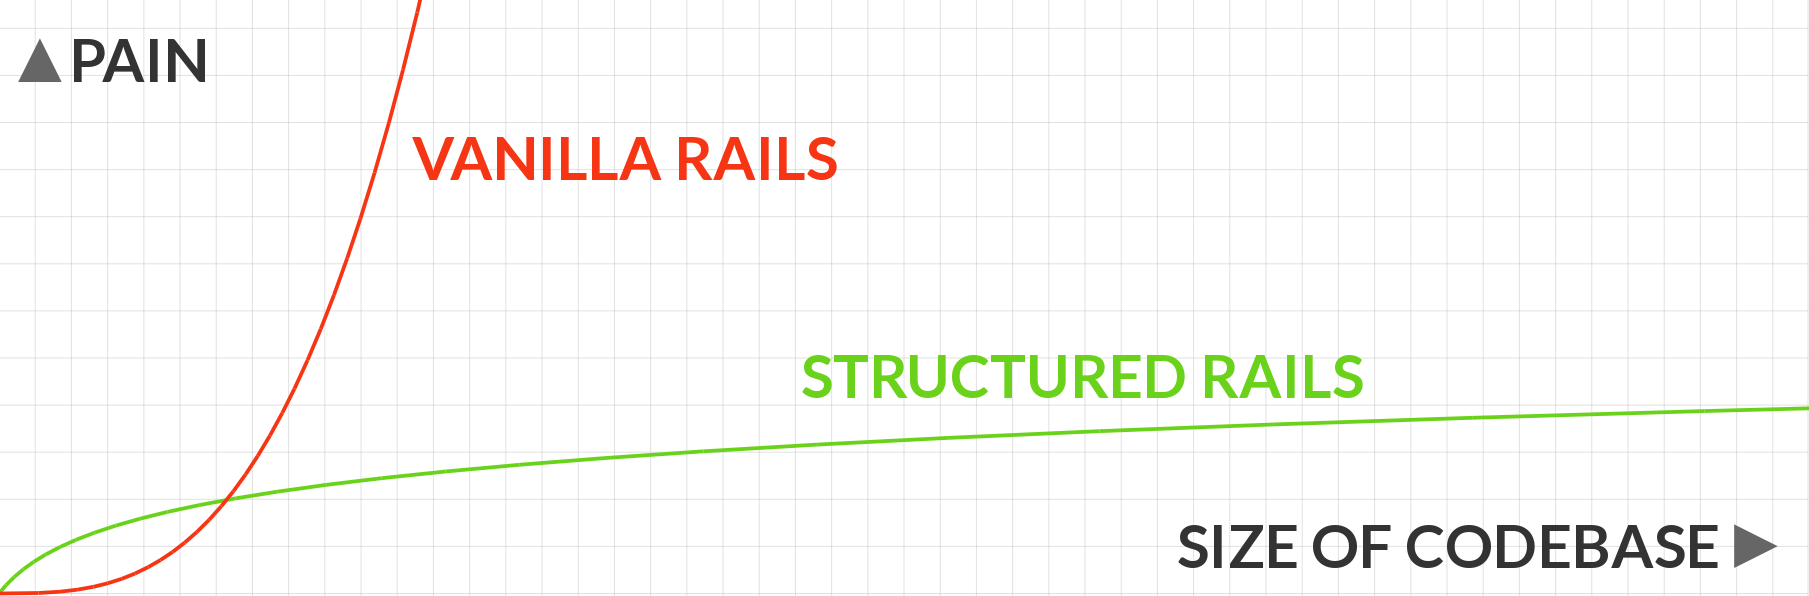 Vanilla Rails vs. structured Rails